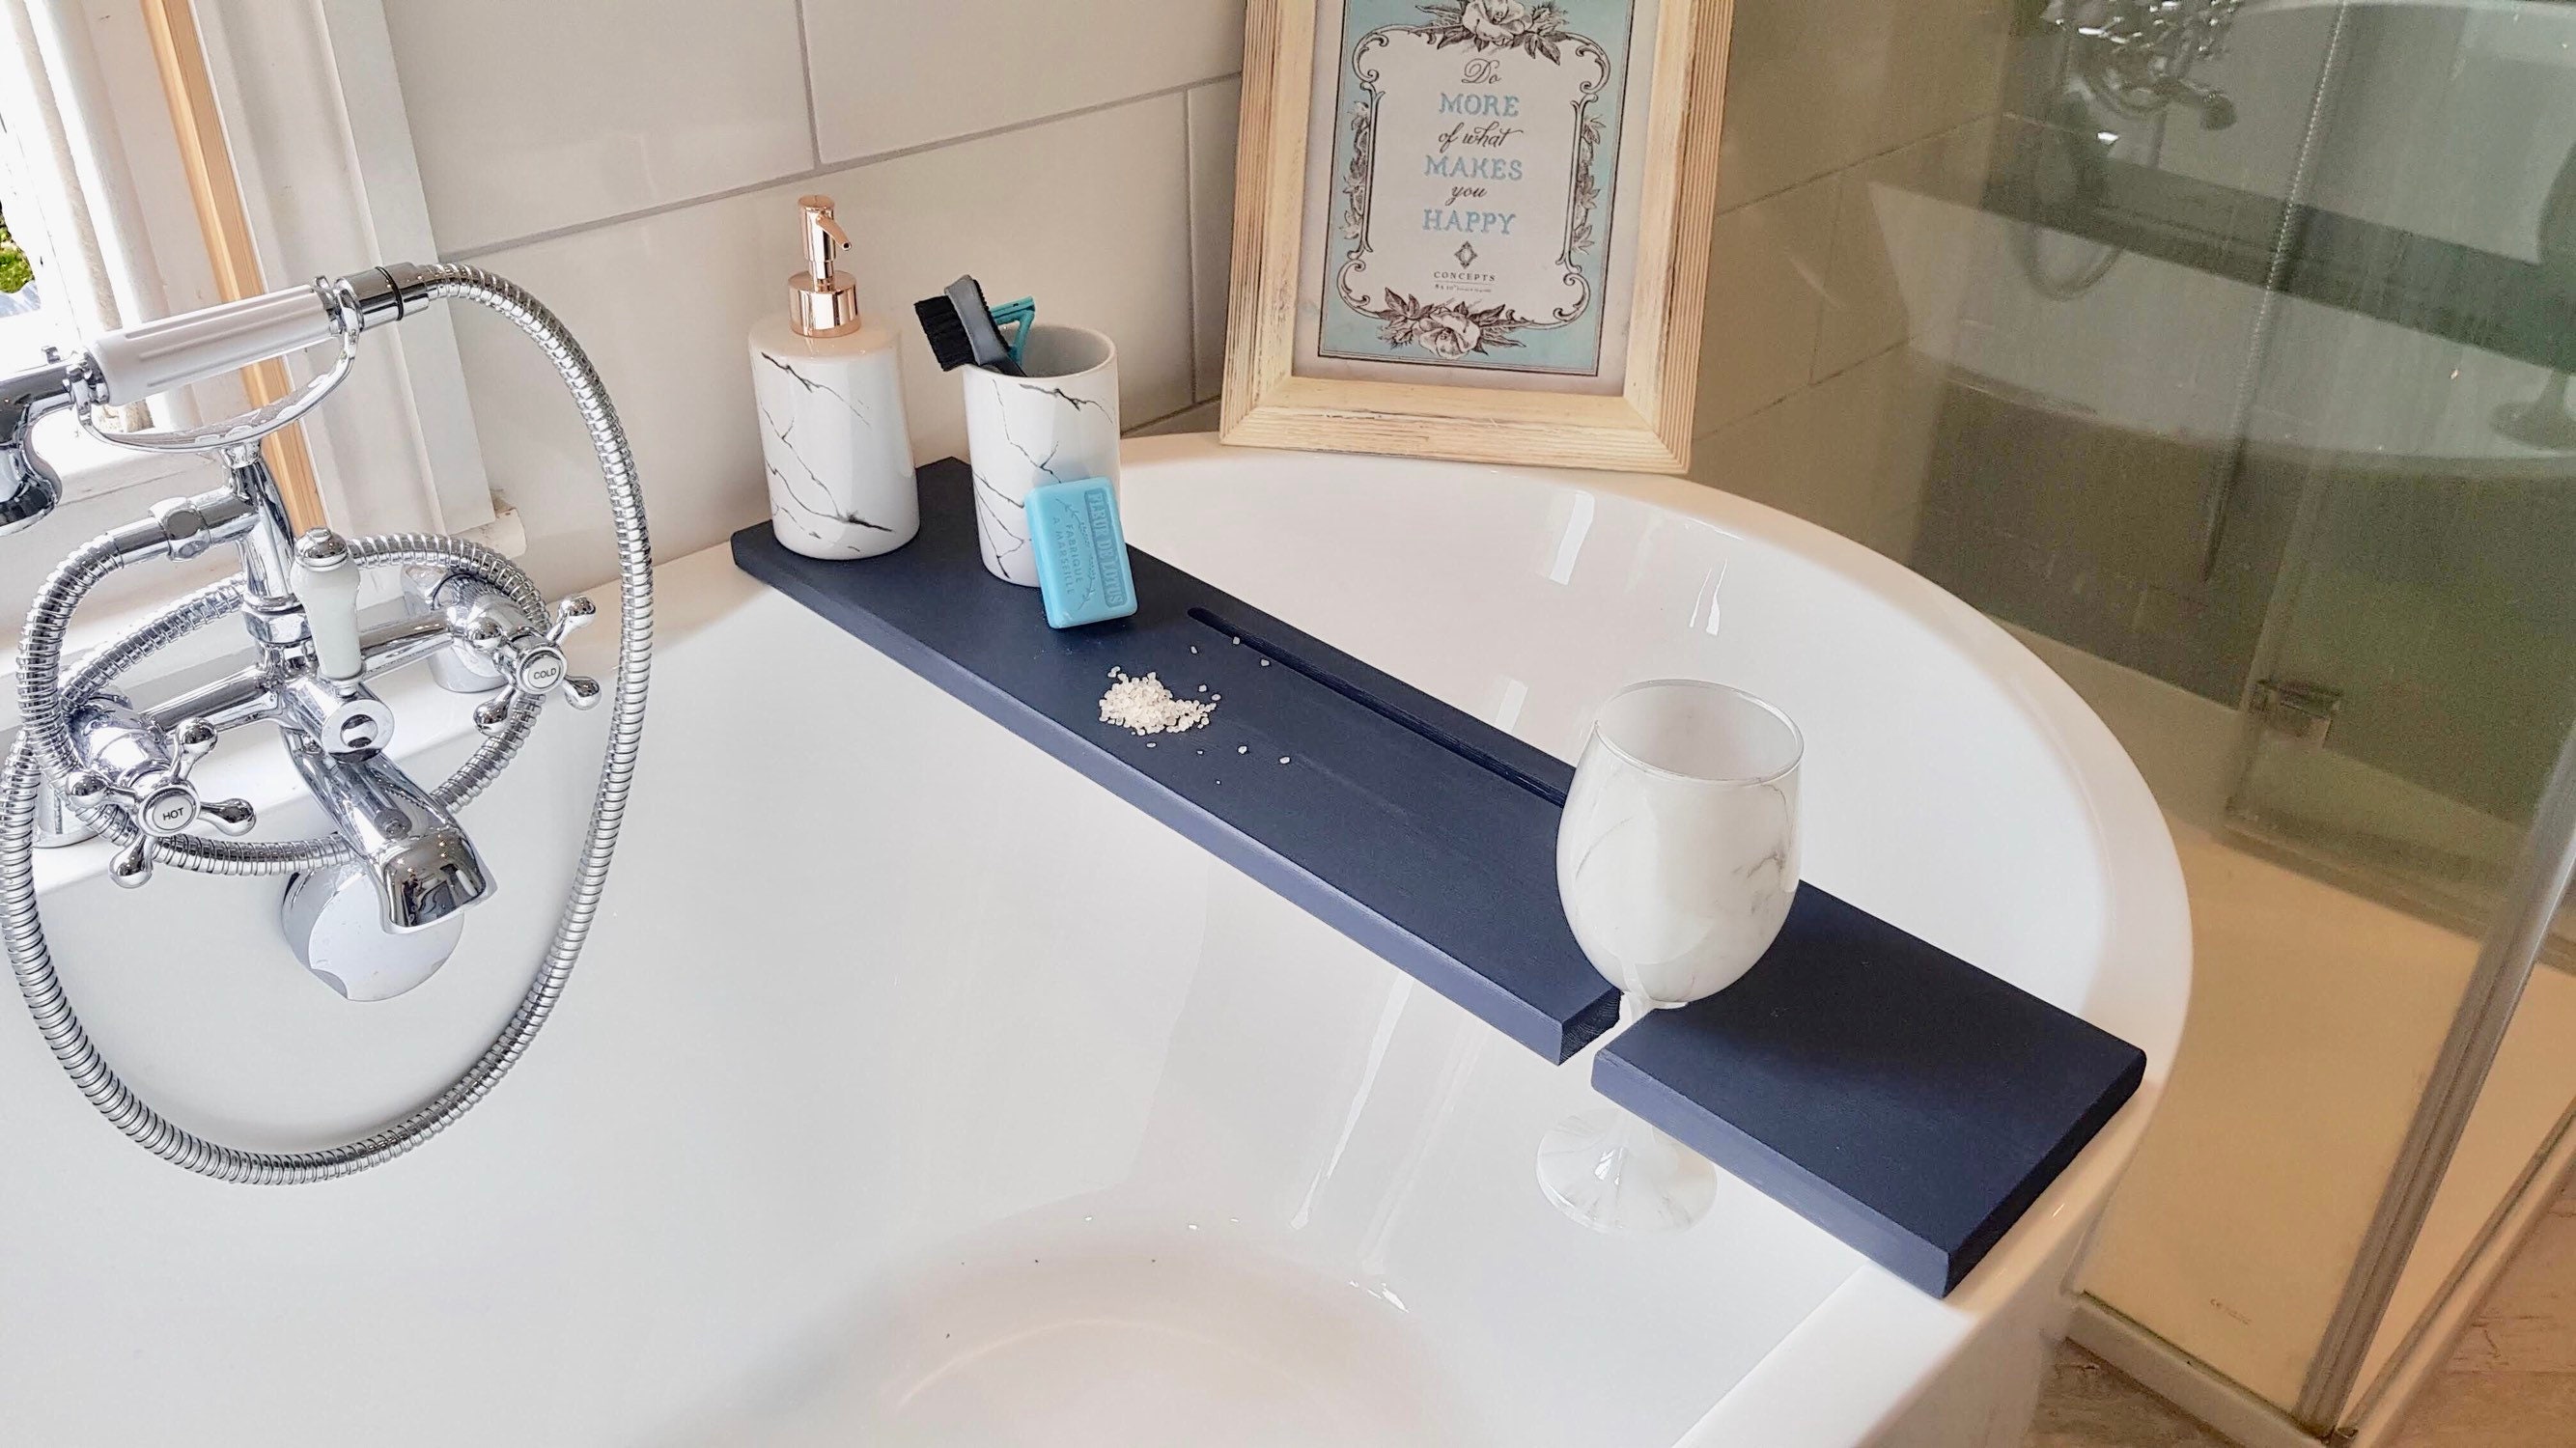 Buy Bathroom Tub Trays & More